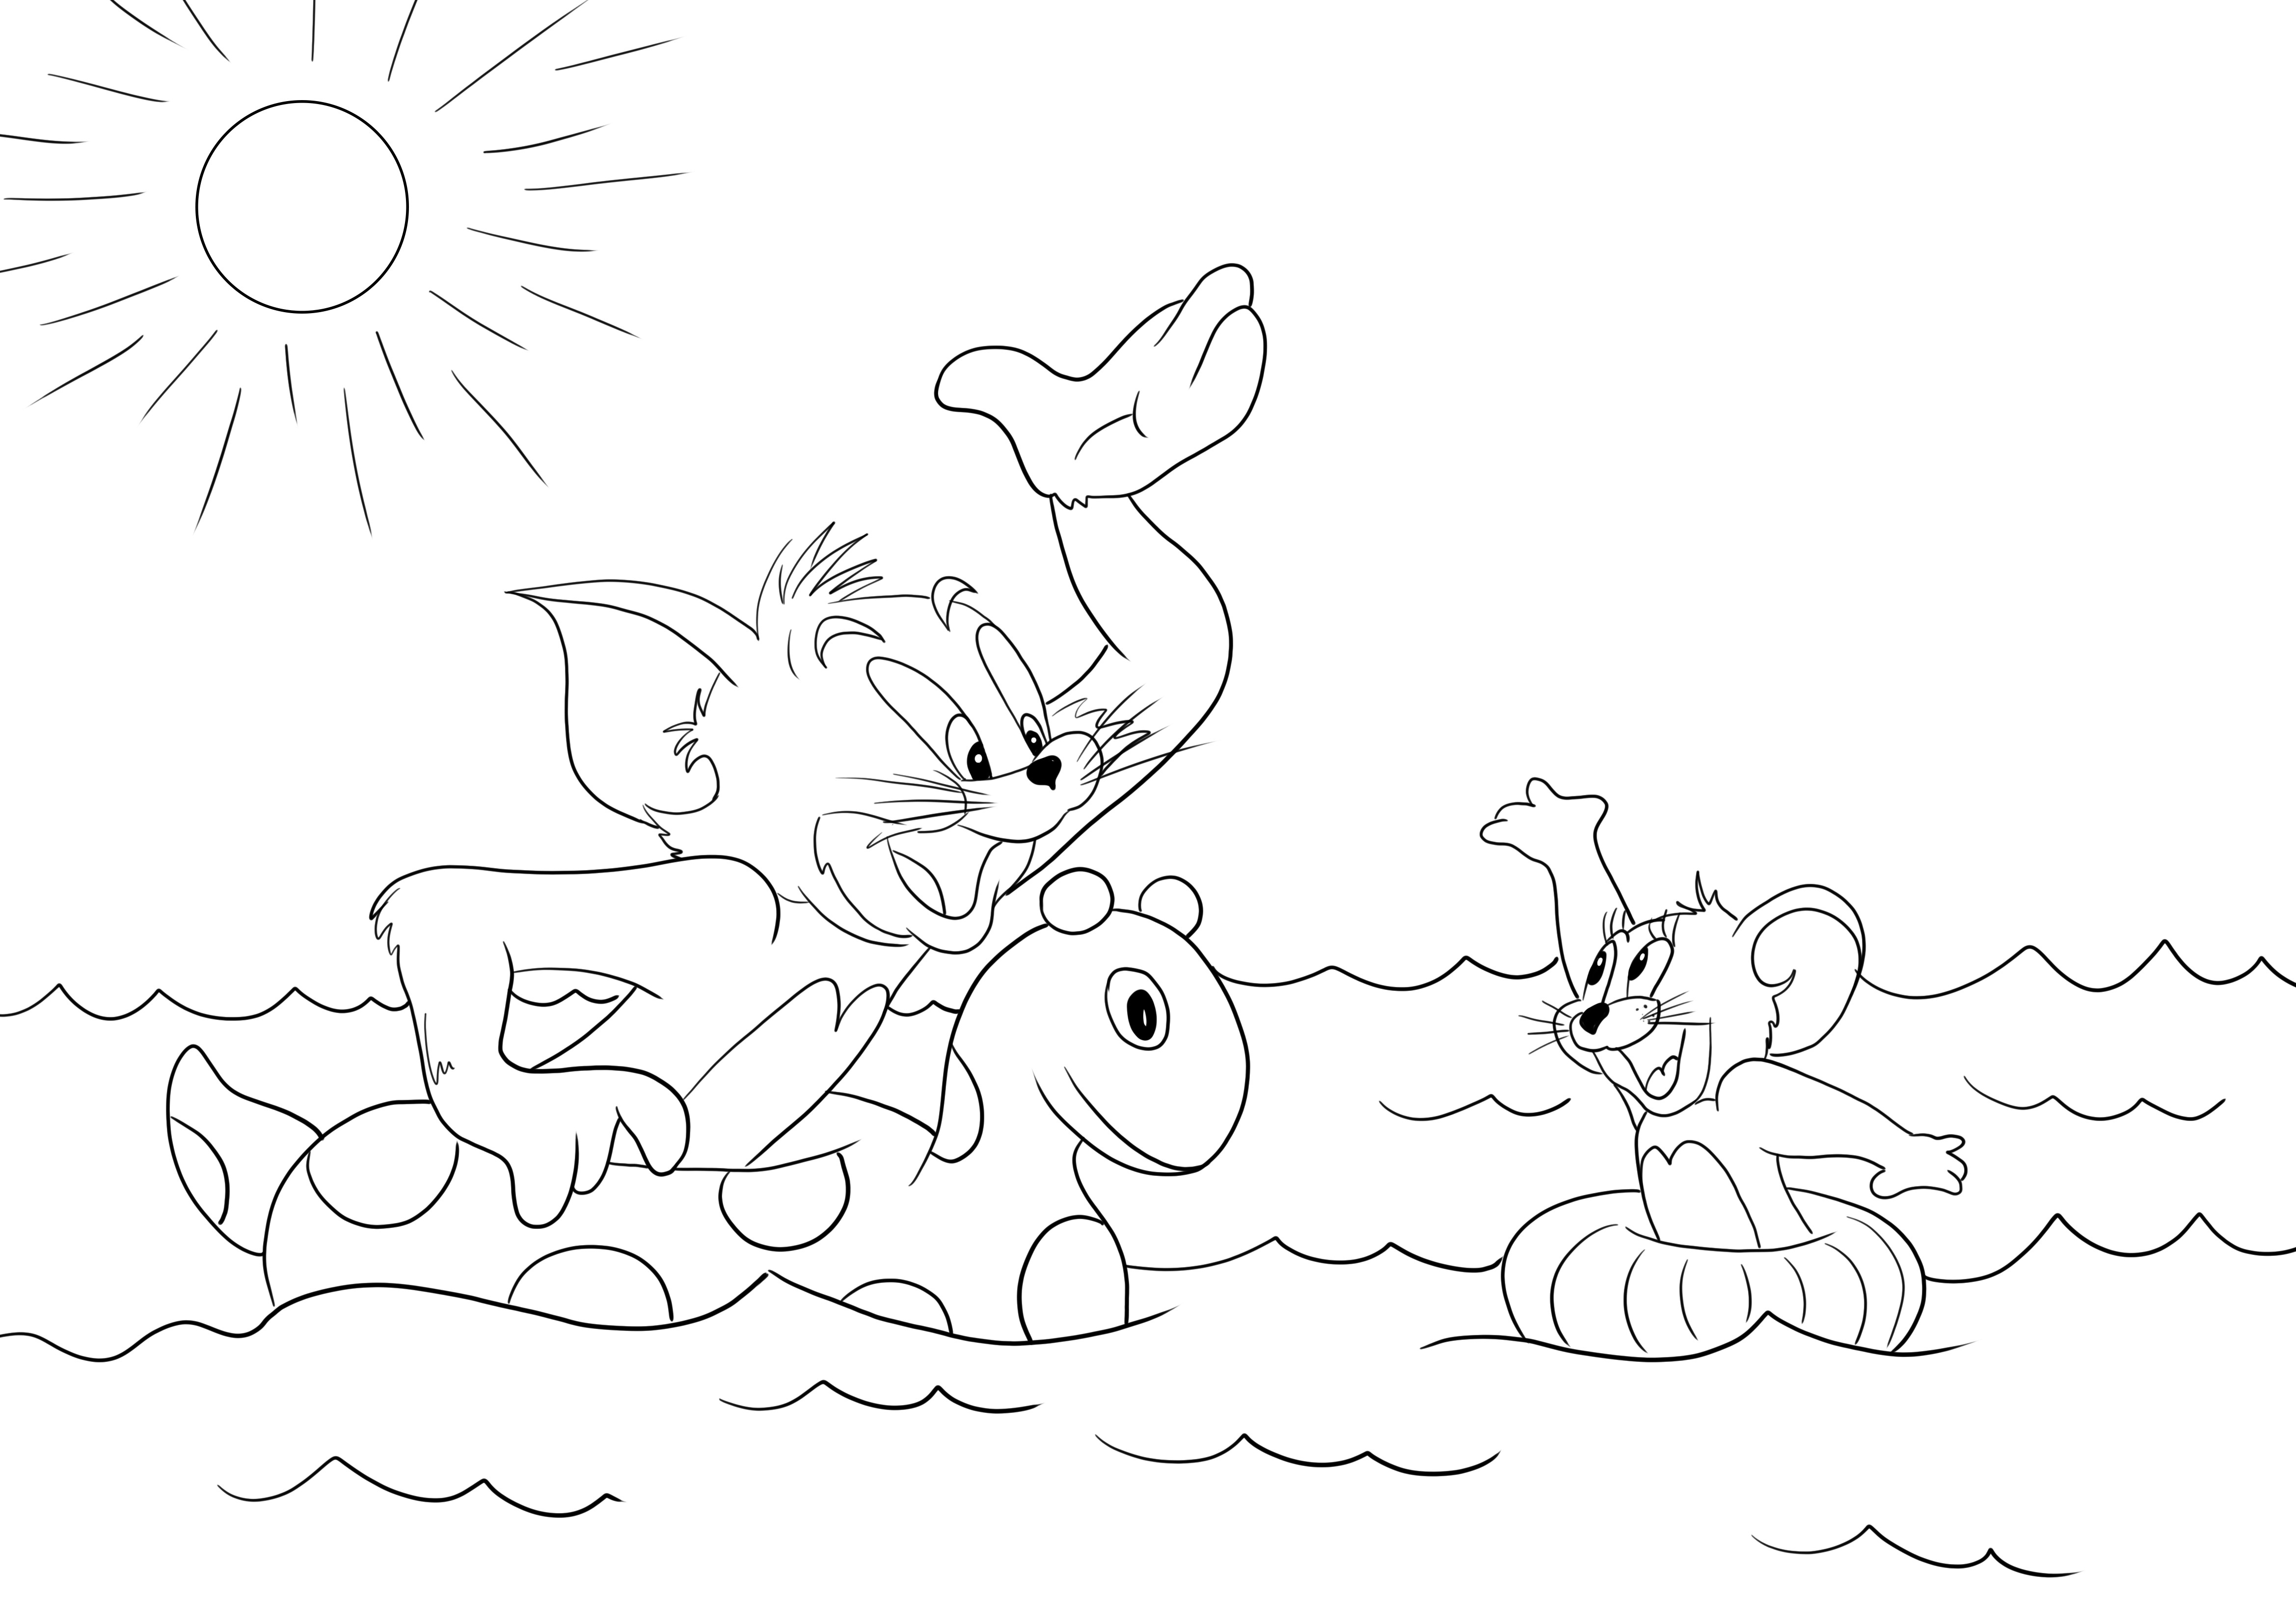 Tom e Jerry che nuotano gratis da colorare e stampare immagini per bambini